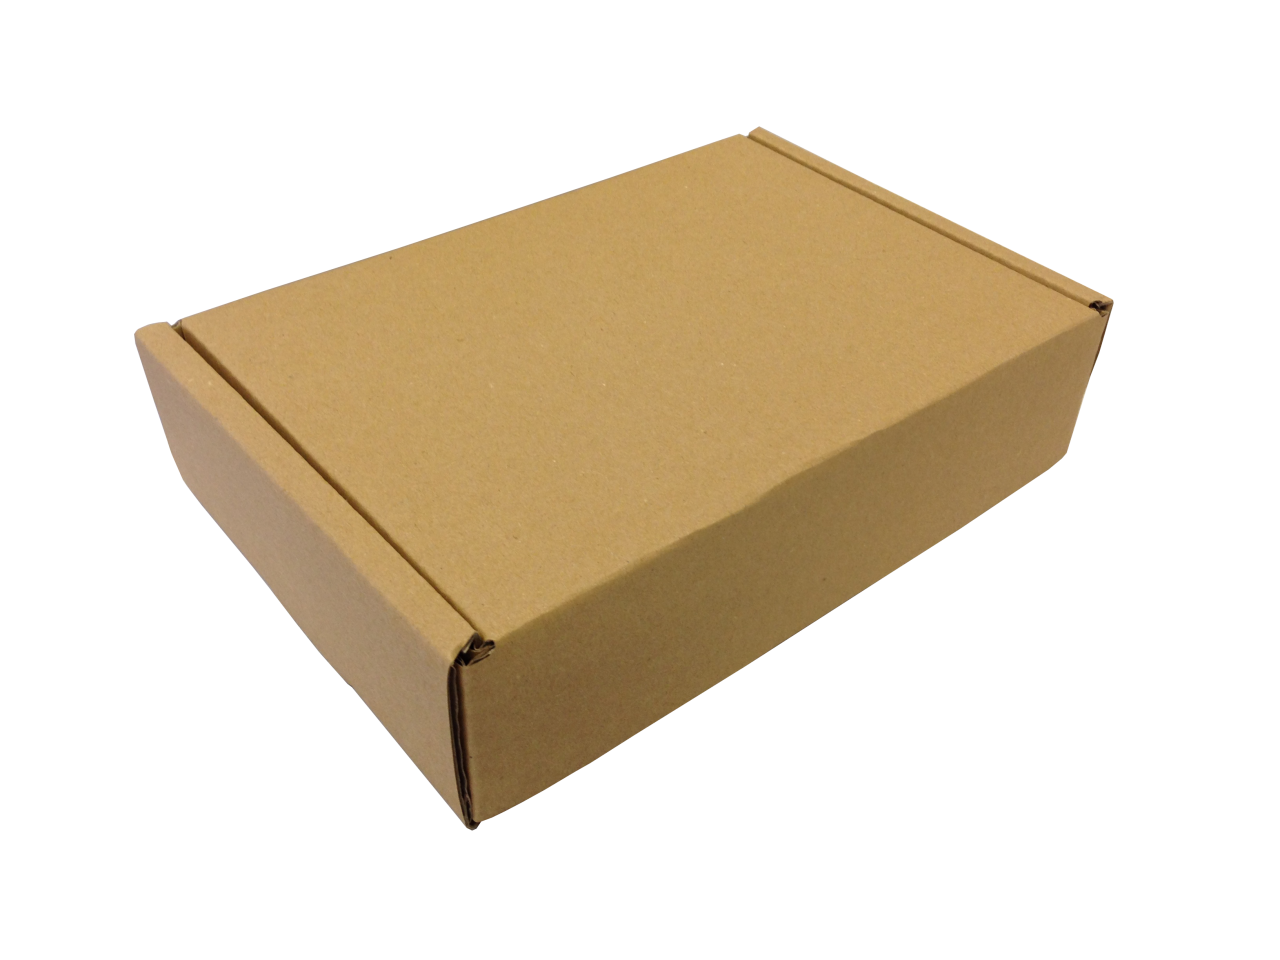 Kis méretű önzáró tároló doboz (200x140x50 mm) Kis méretű, önzáródó, hullámkarton tároló doboz felnyitható tetővel

Felhasználás: 
Ajándéktárgyak, szerszámok, szerelvények, egyéb kisméretű tárgyak tárolására alkalmas kisméretű önzáródó hullámkarton tároló doboz.

Méret: 200 x 140 x 50 mm - hullámkarton tároló doboz

Anyag: fehér vagy barna hullám karton papír